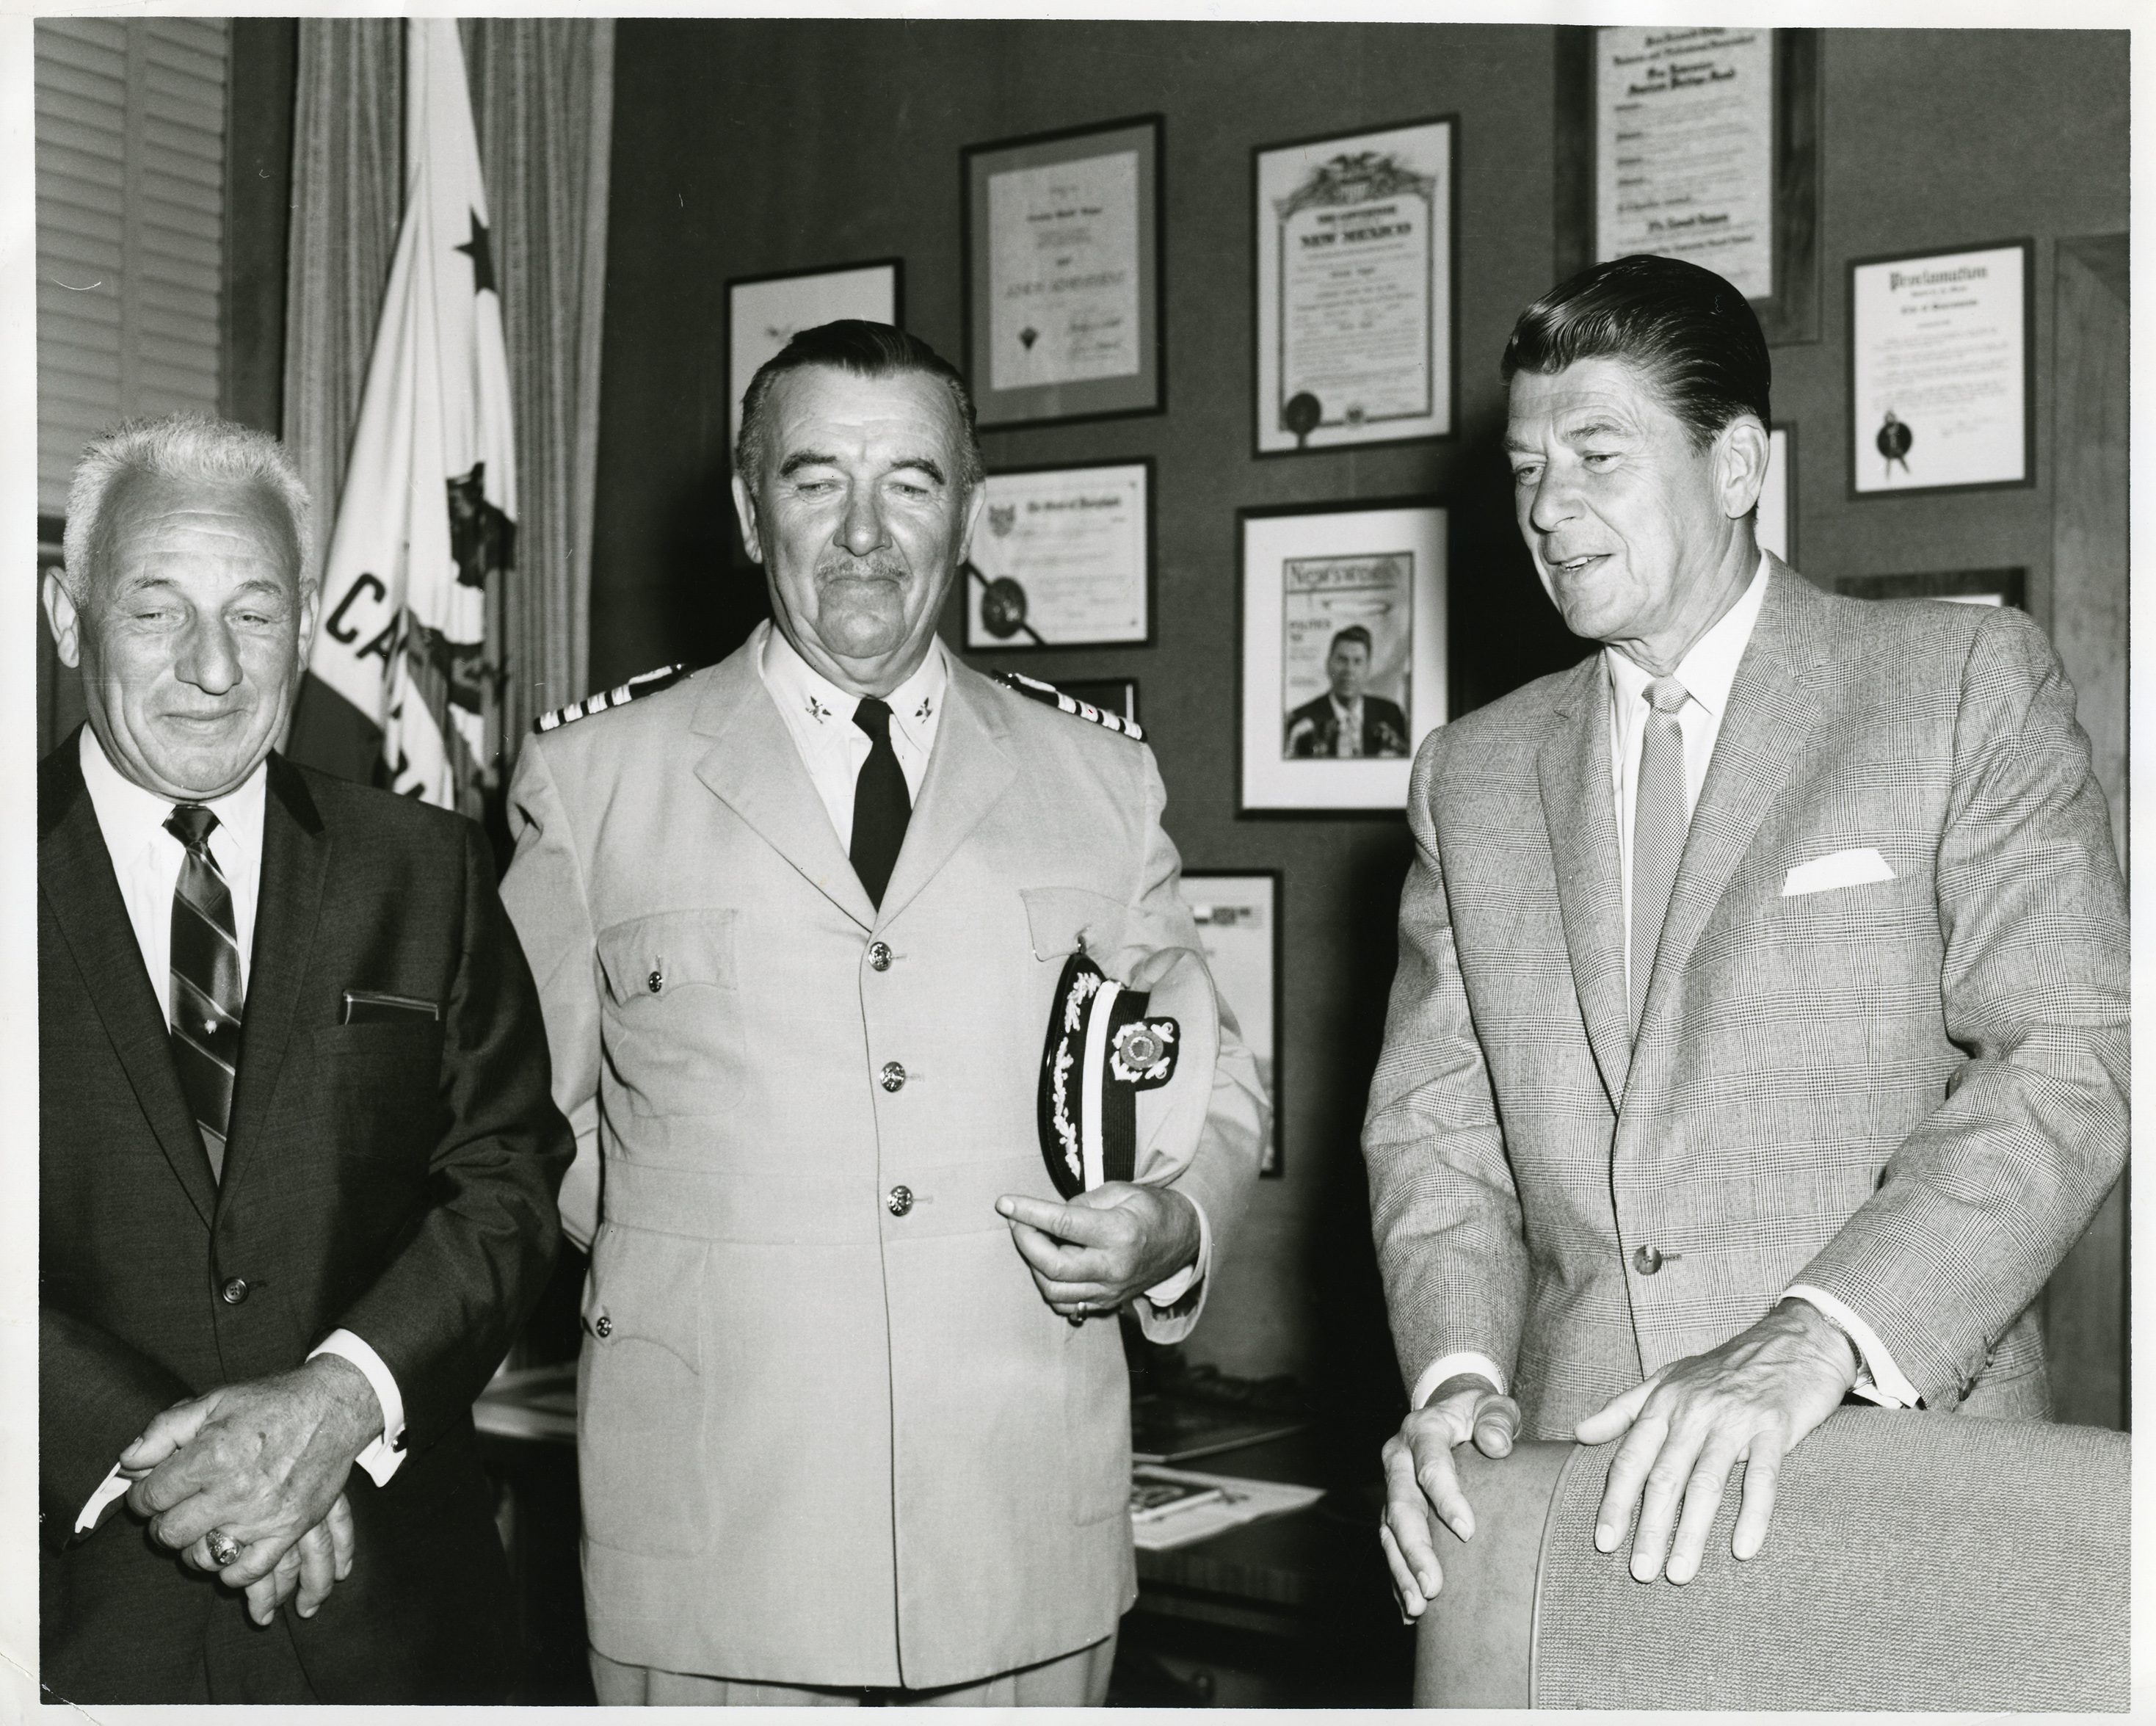 Governor Reagan and Preston Foster